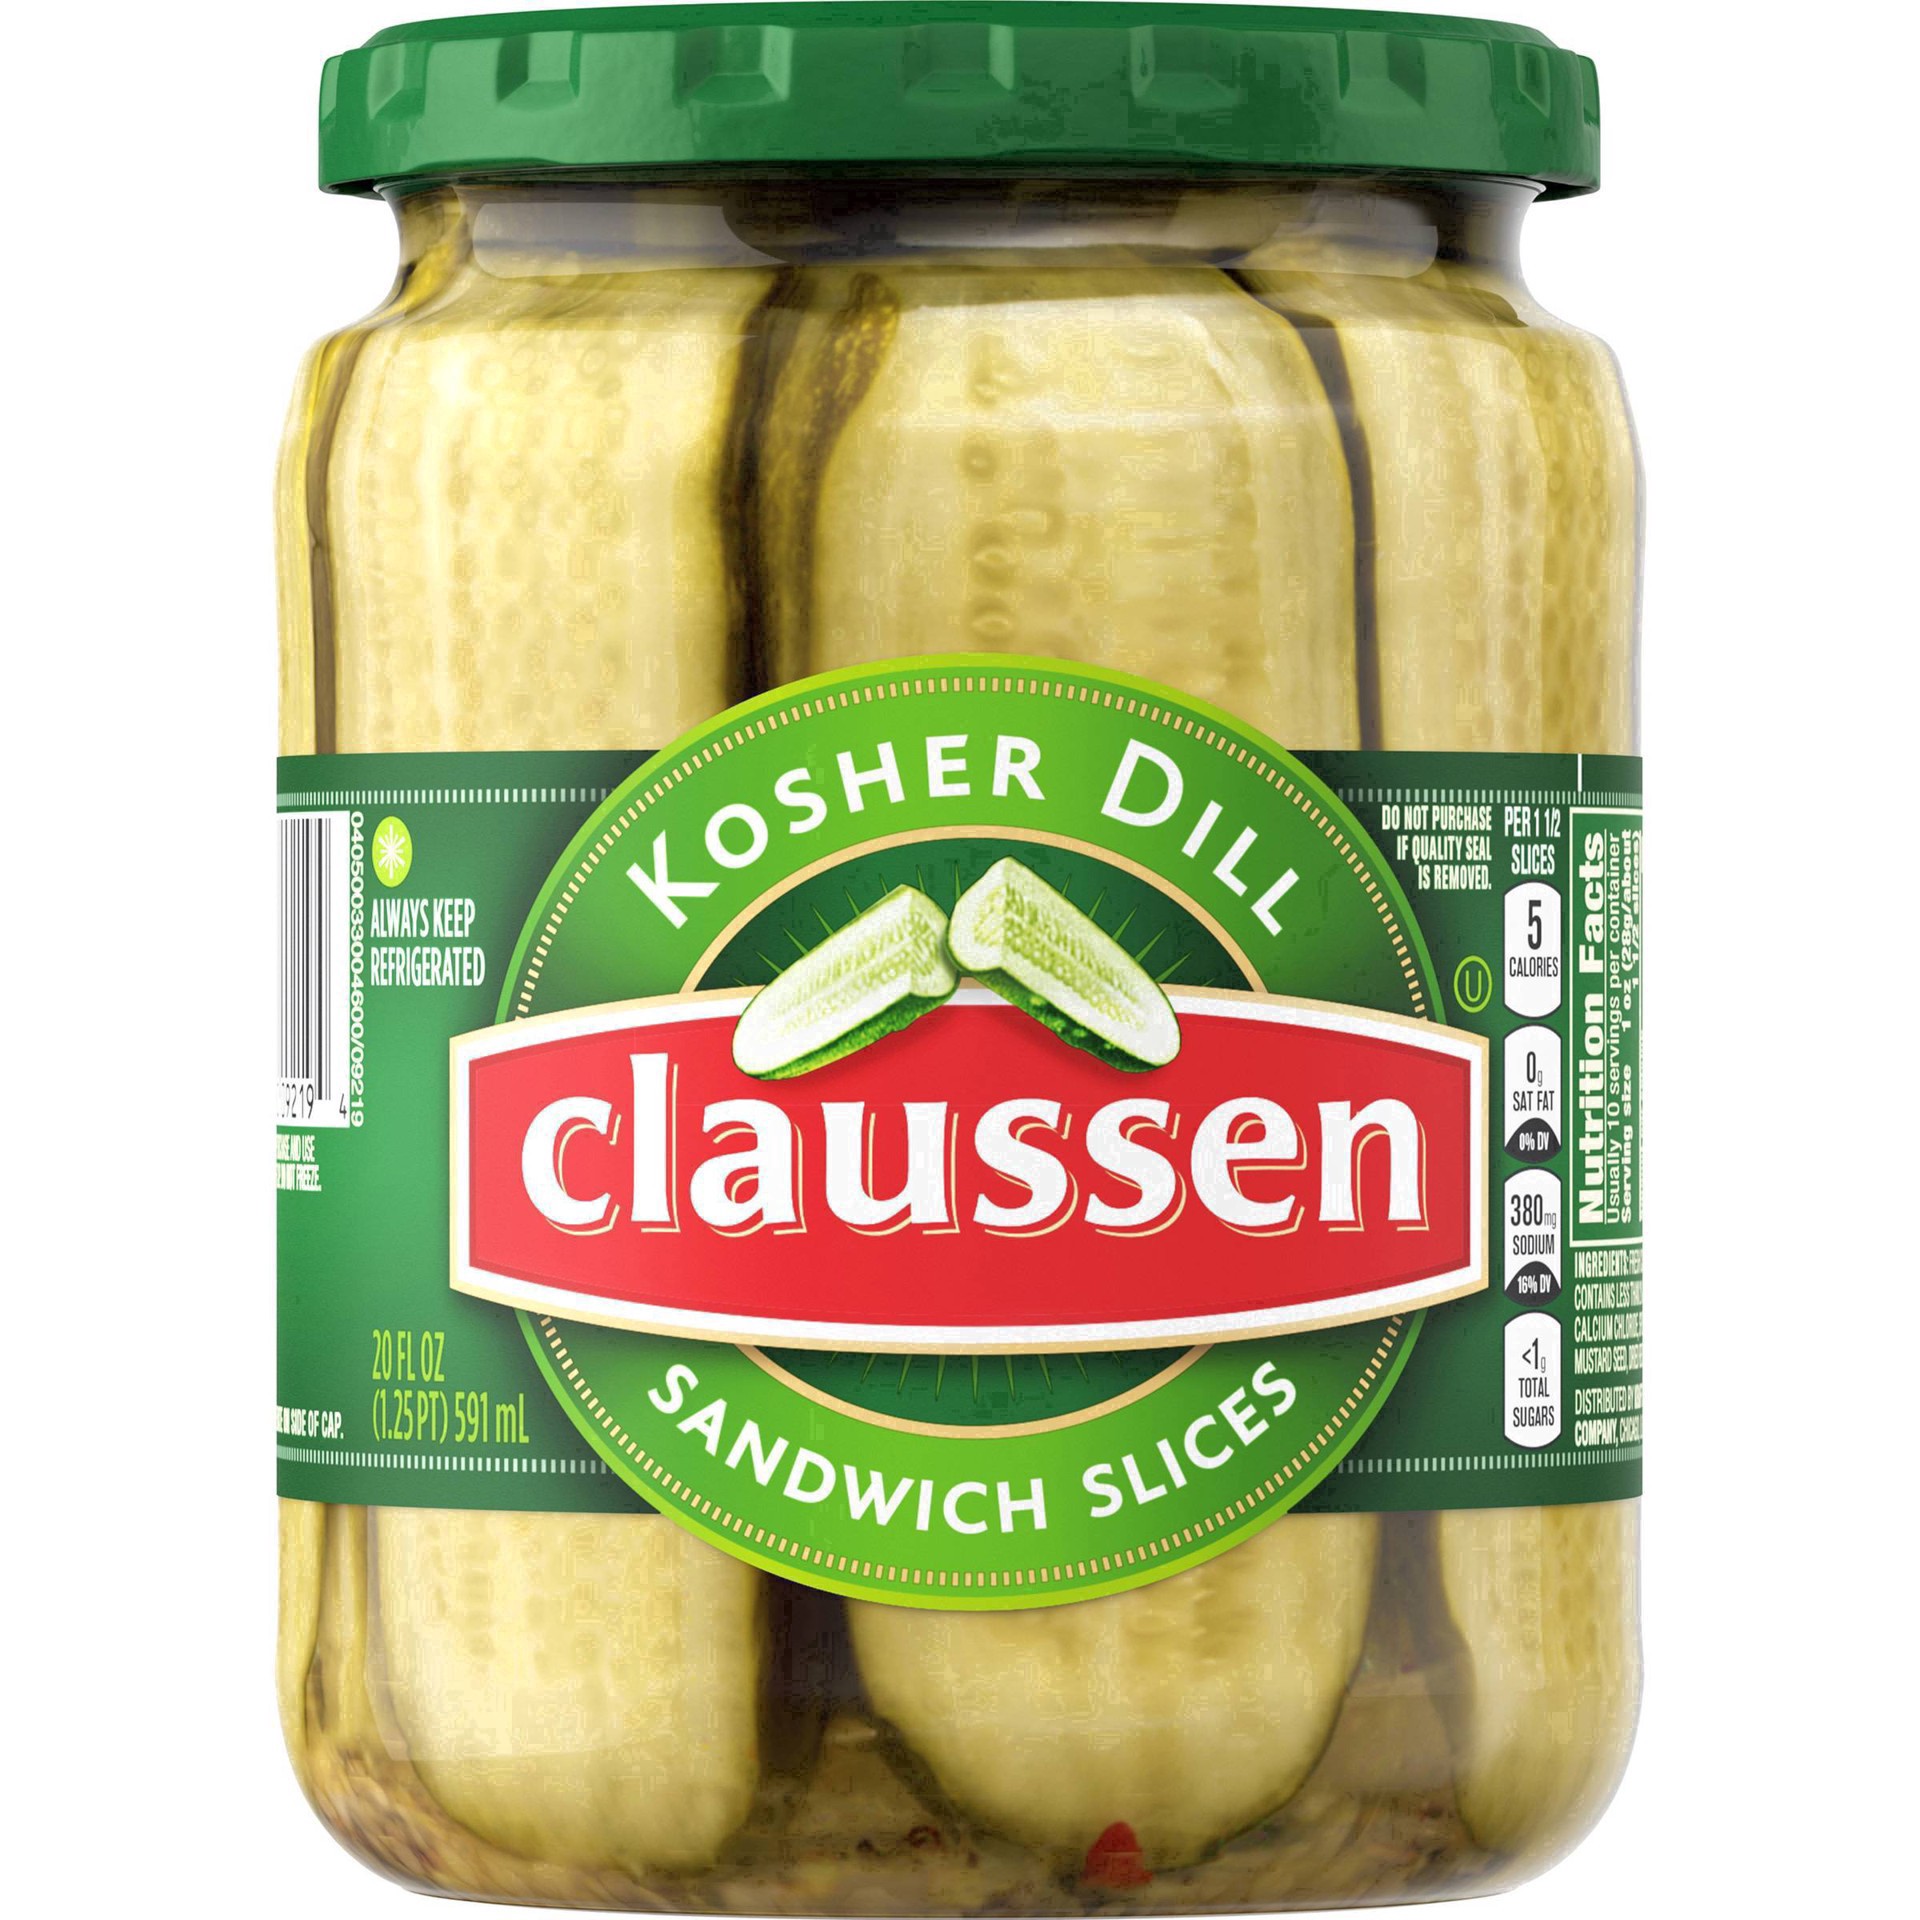 slide 30 of 144, Claussen Kosher Dill Pickle Sandwich Slices, 20 fl. oz. Jar, 20 fl oz